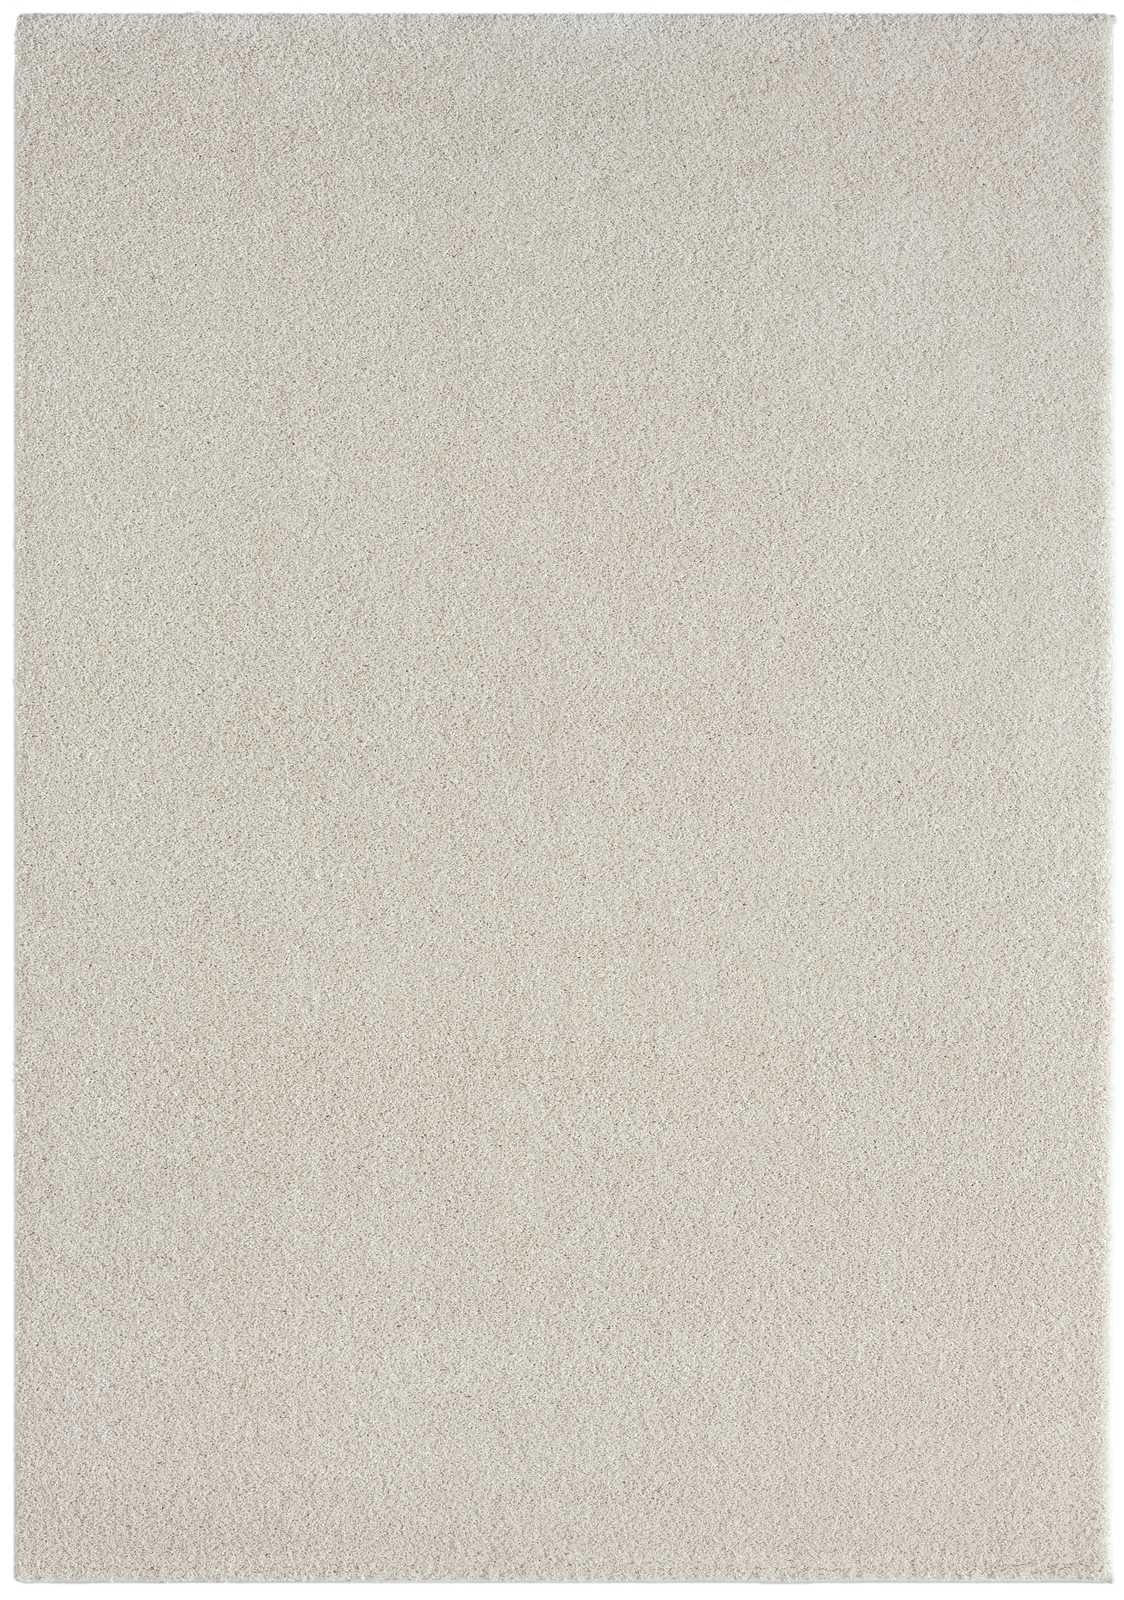             Cremefarbener Kurzflor Teppich – 200 x 140 cm
        